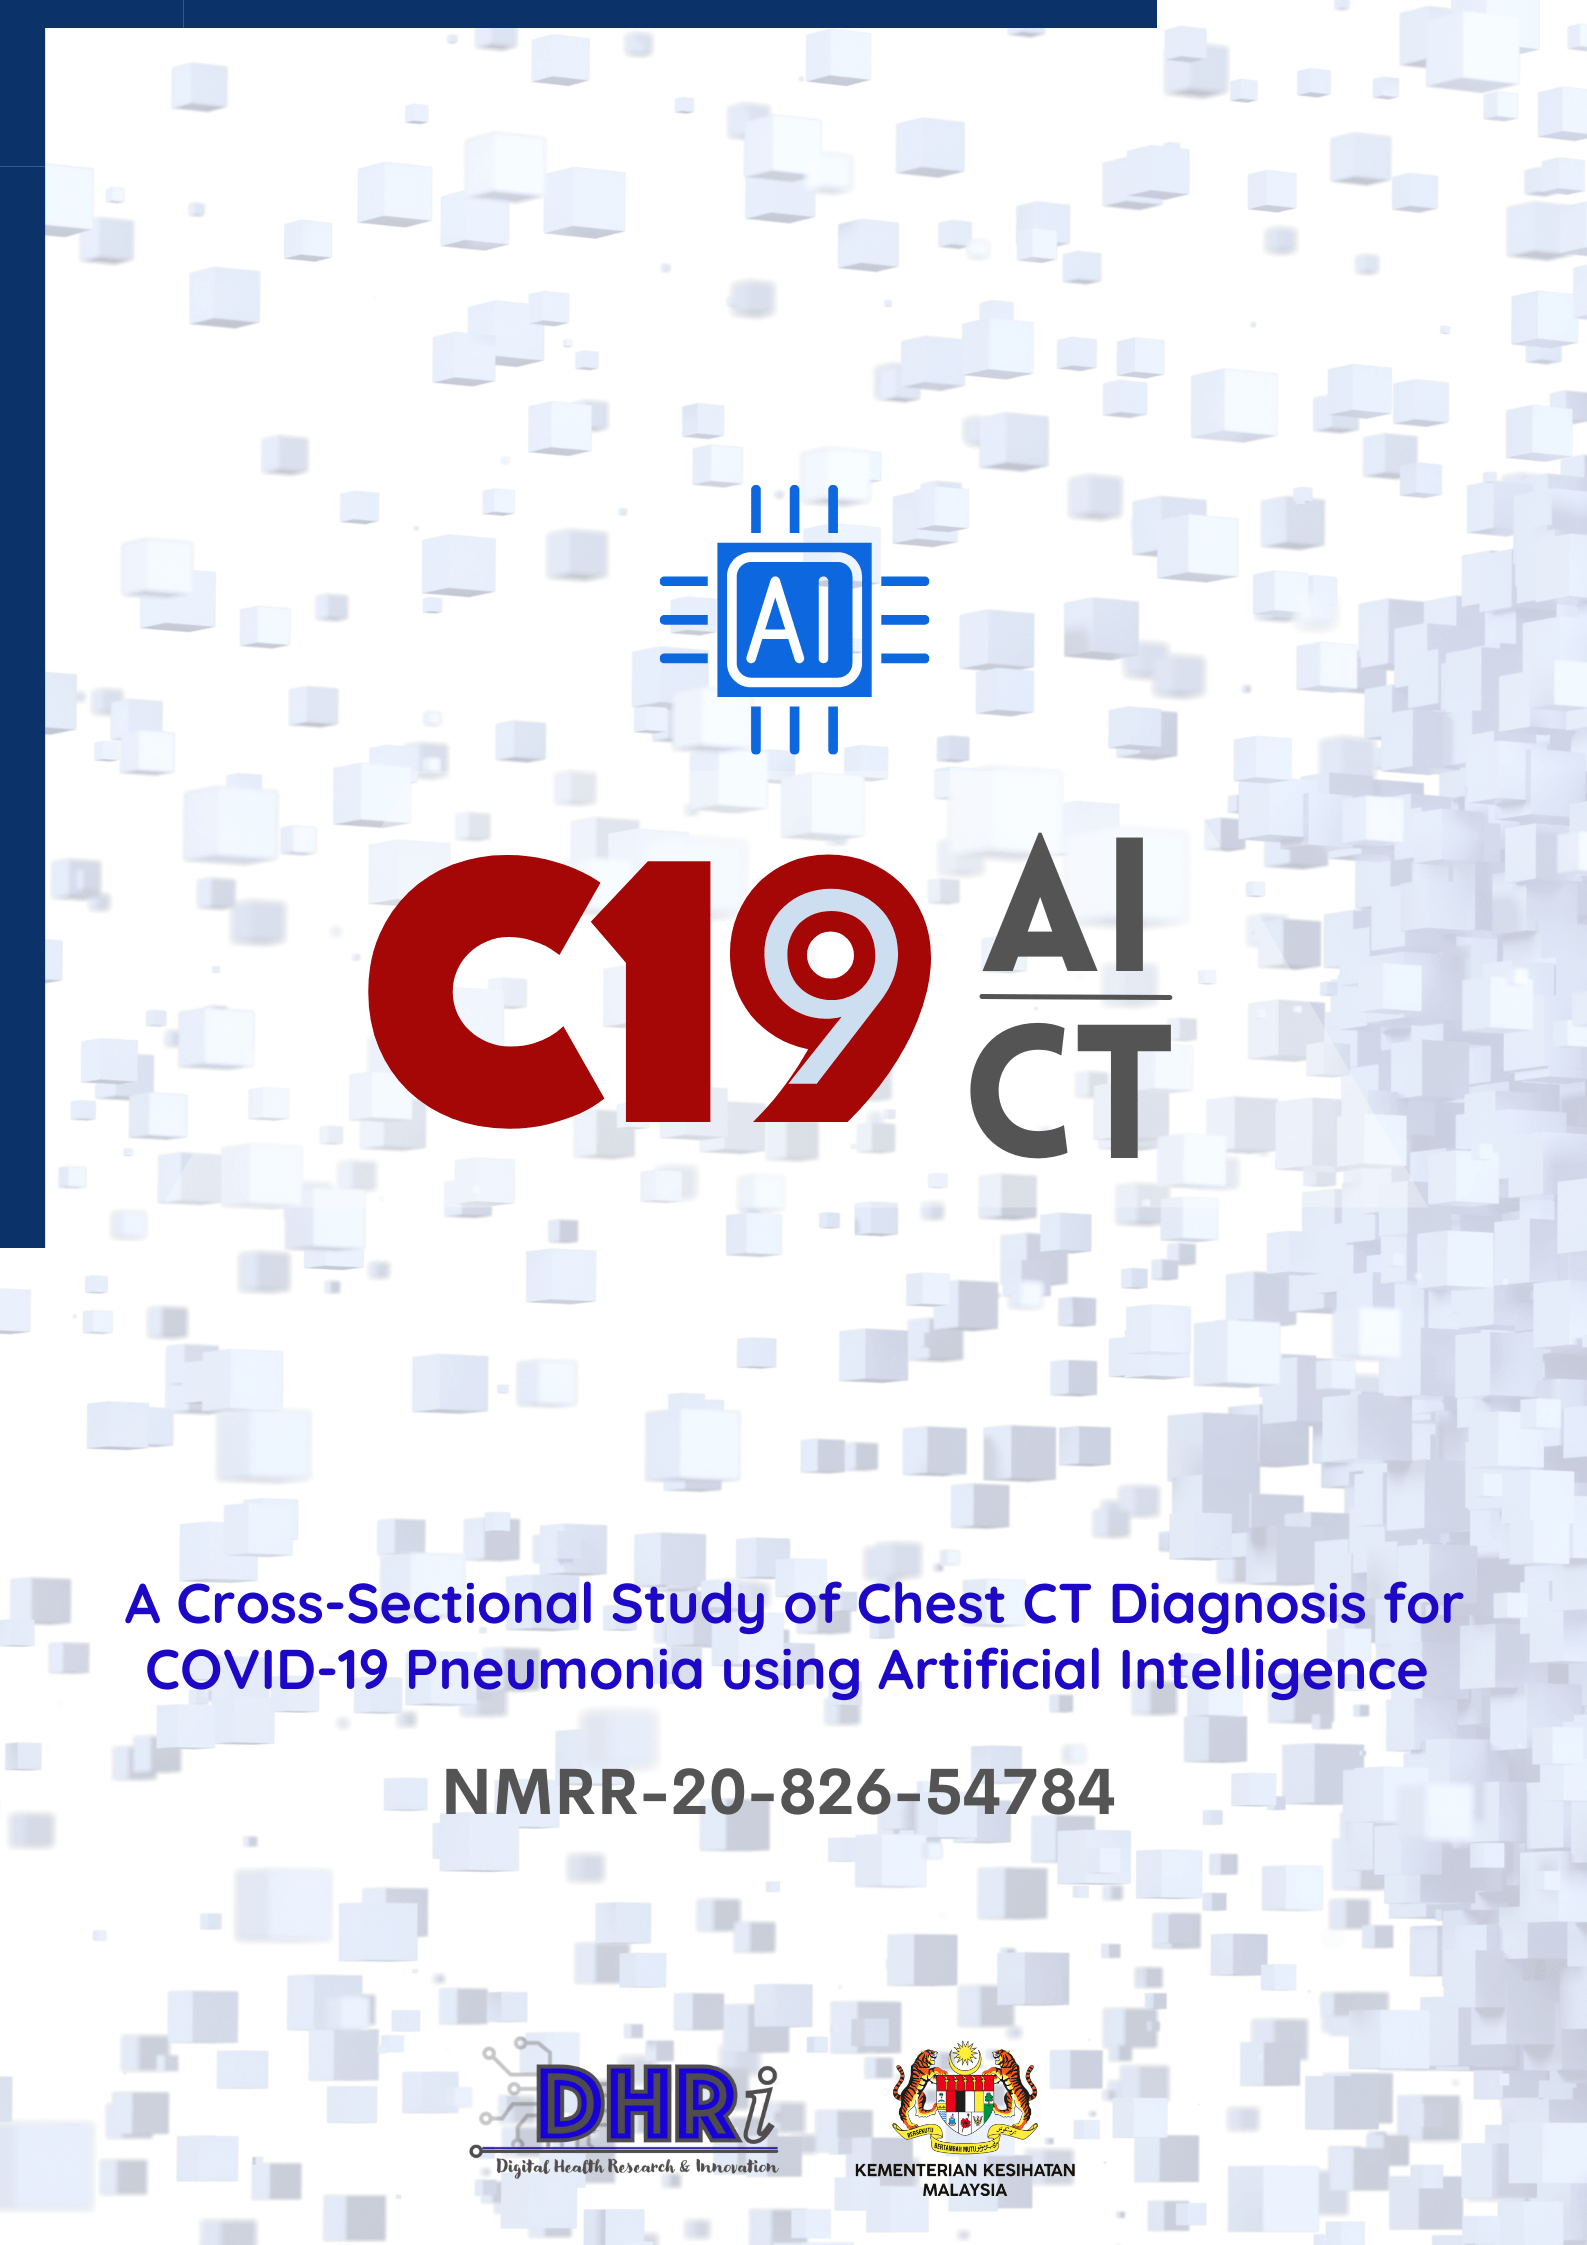 C19-AICT-min.png